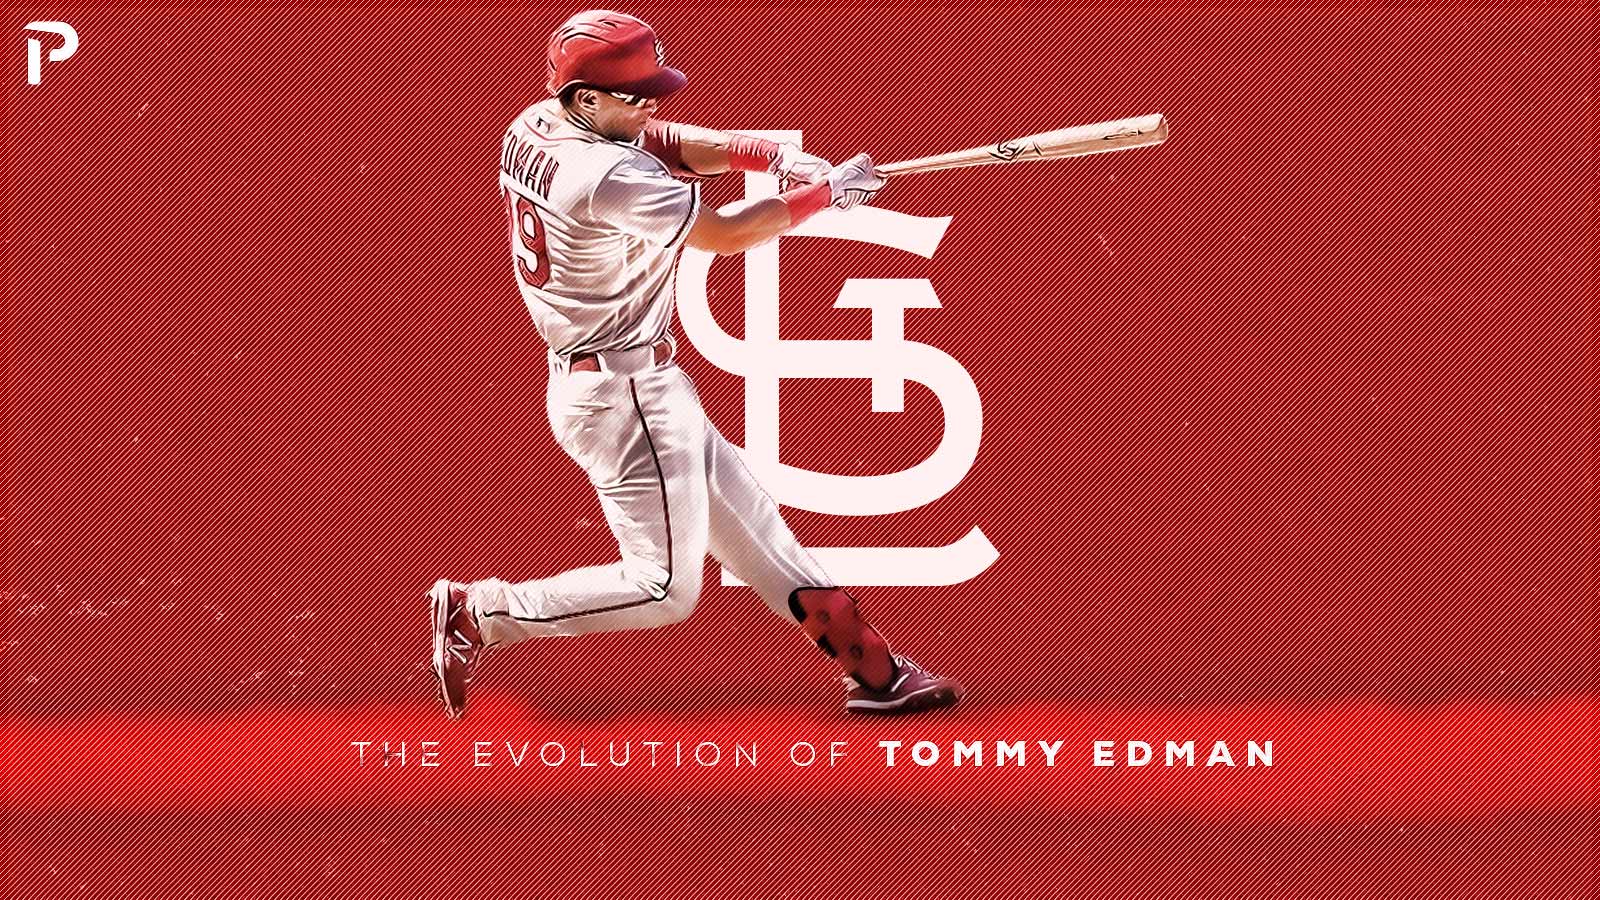 The Evolution of Tommy Edman